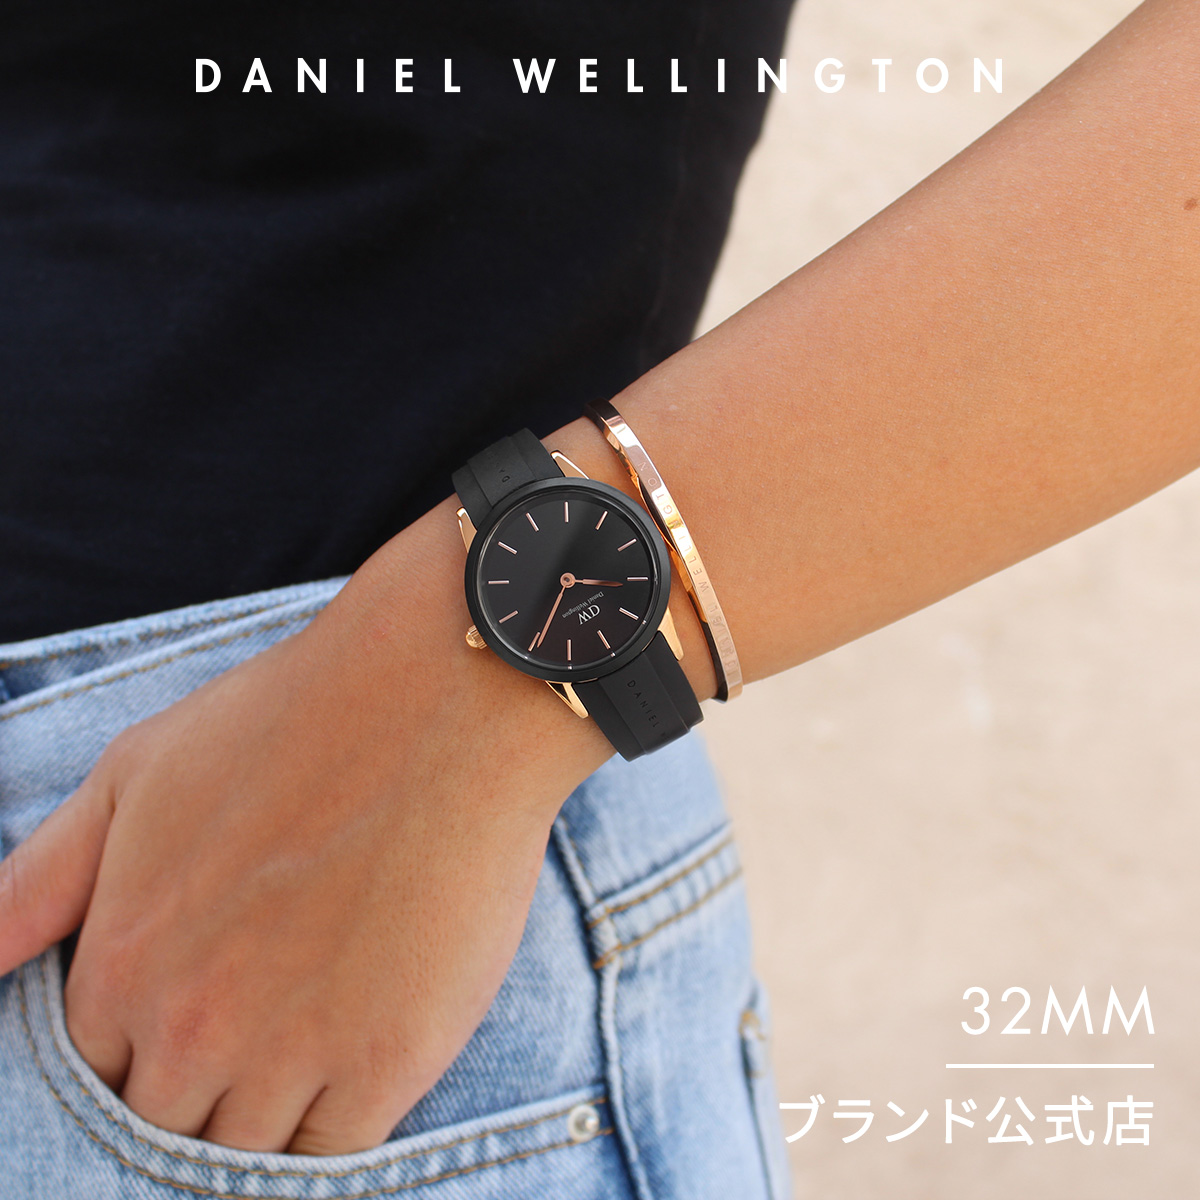 ダニエル ウェリントンの腕時計